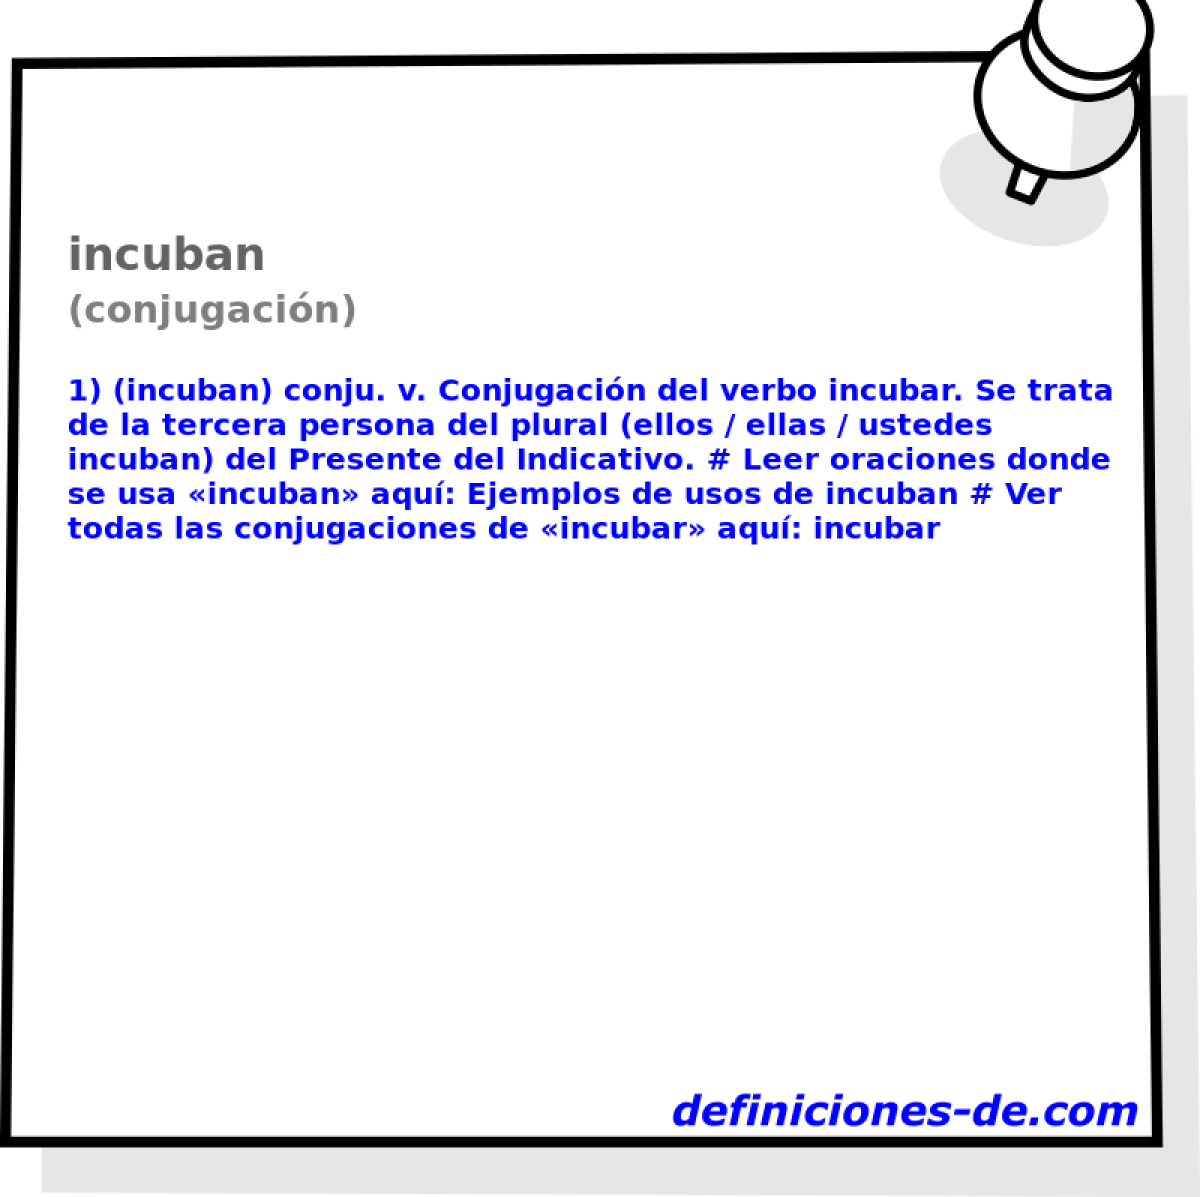 incuban (conjugacin)